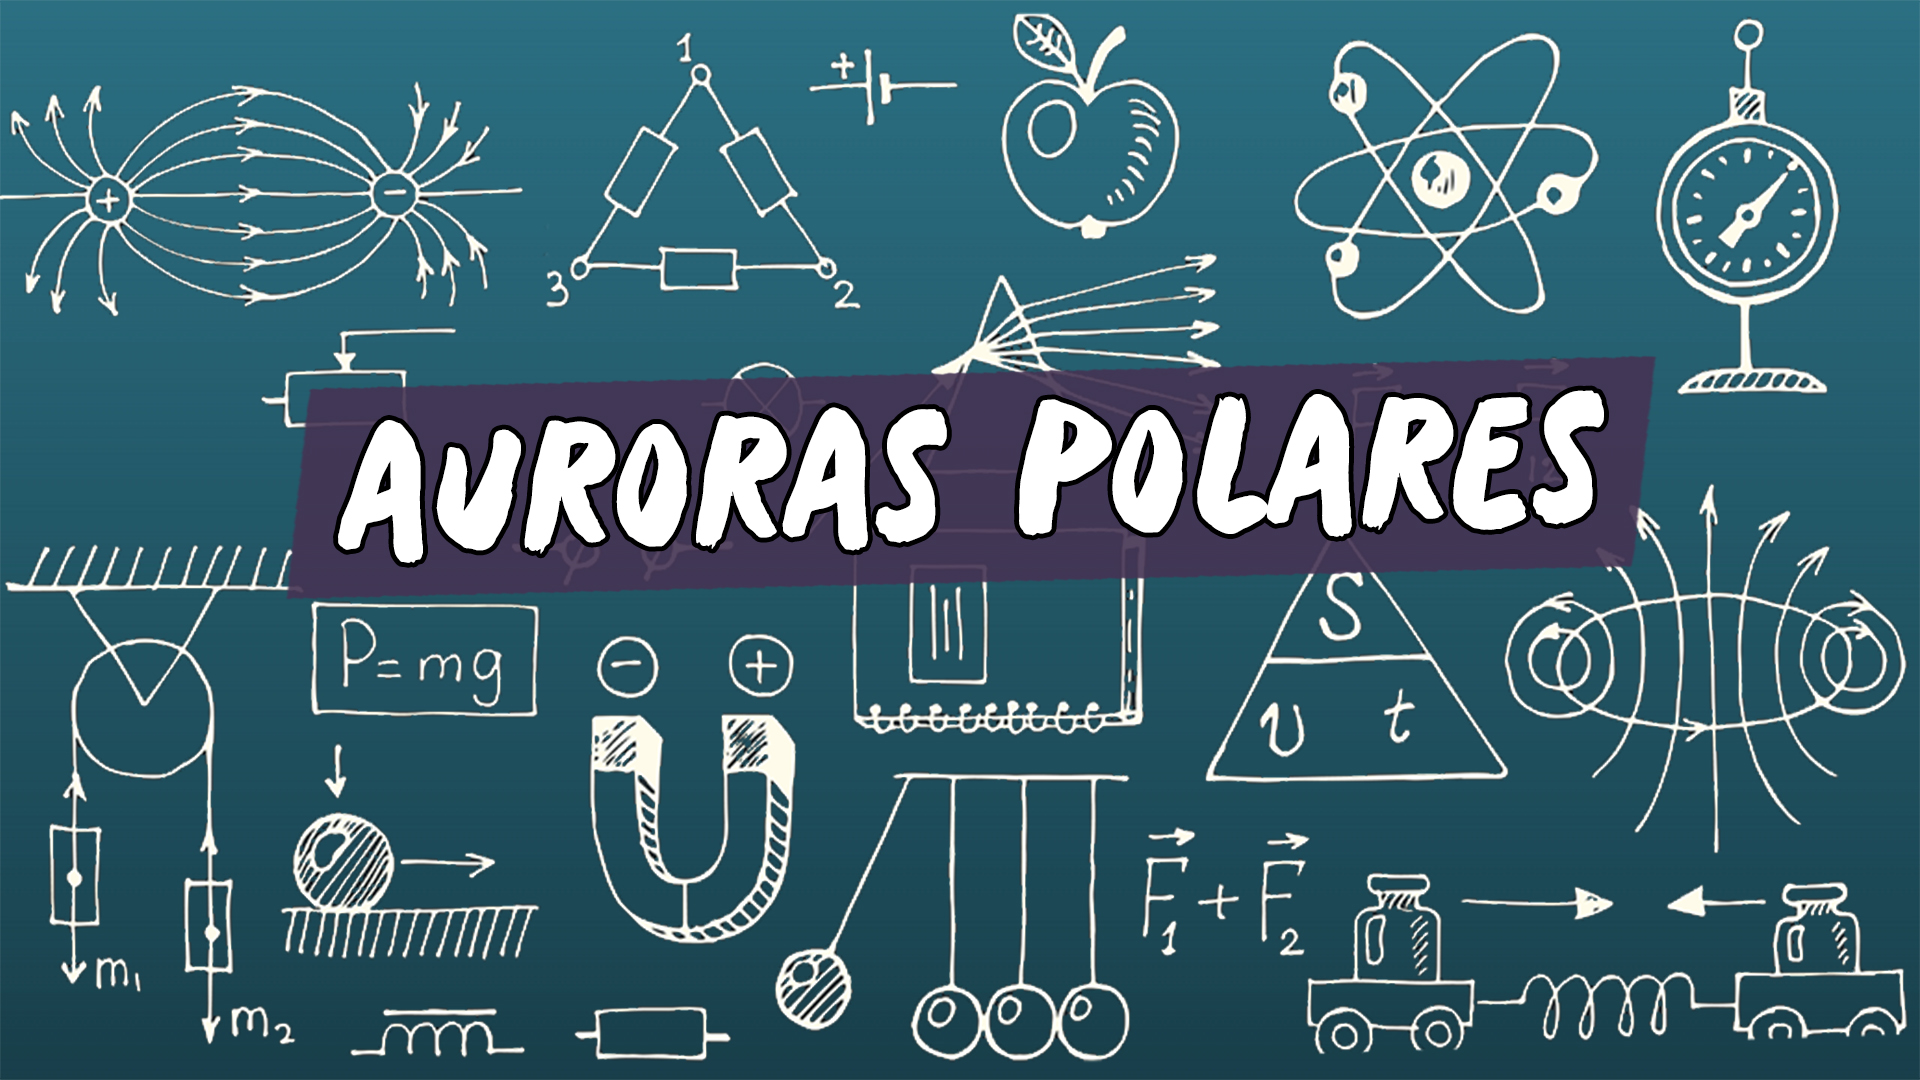 Escrito"Auroras Polares" sobre uma representação de vários conceitos da área da física.